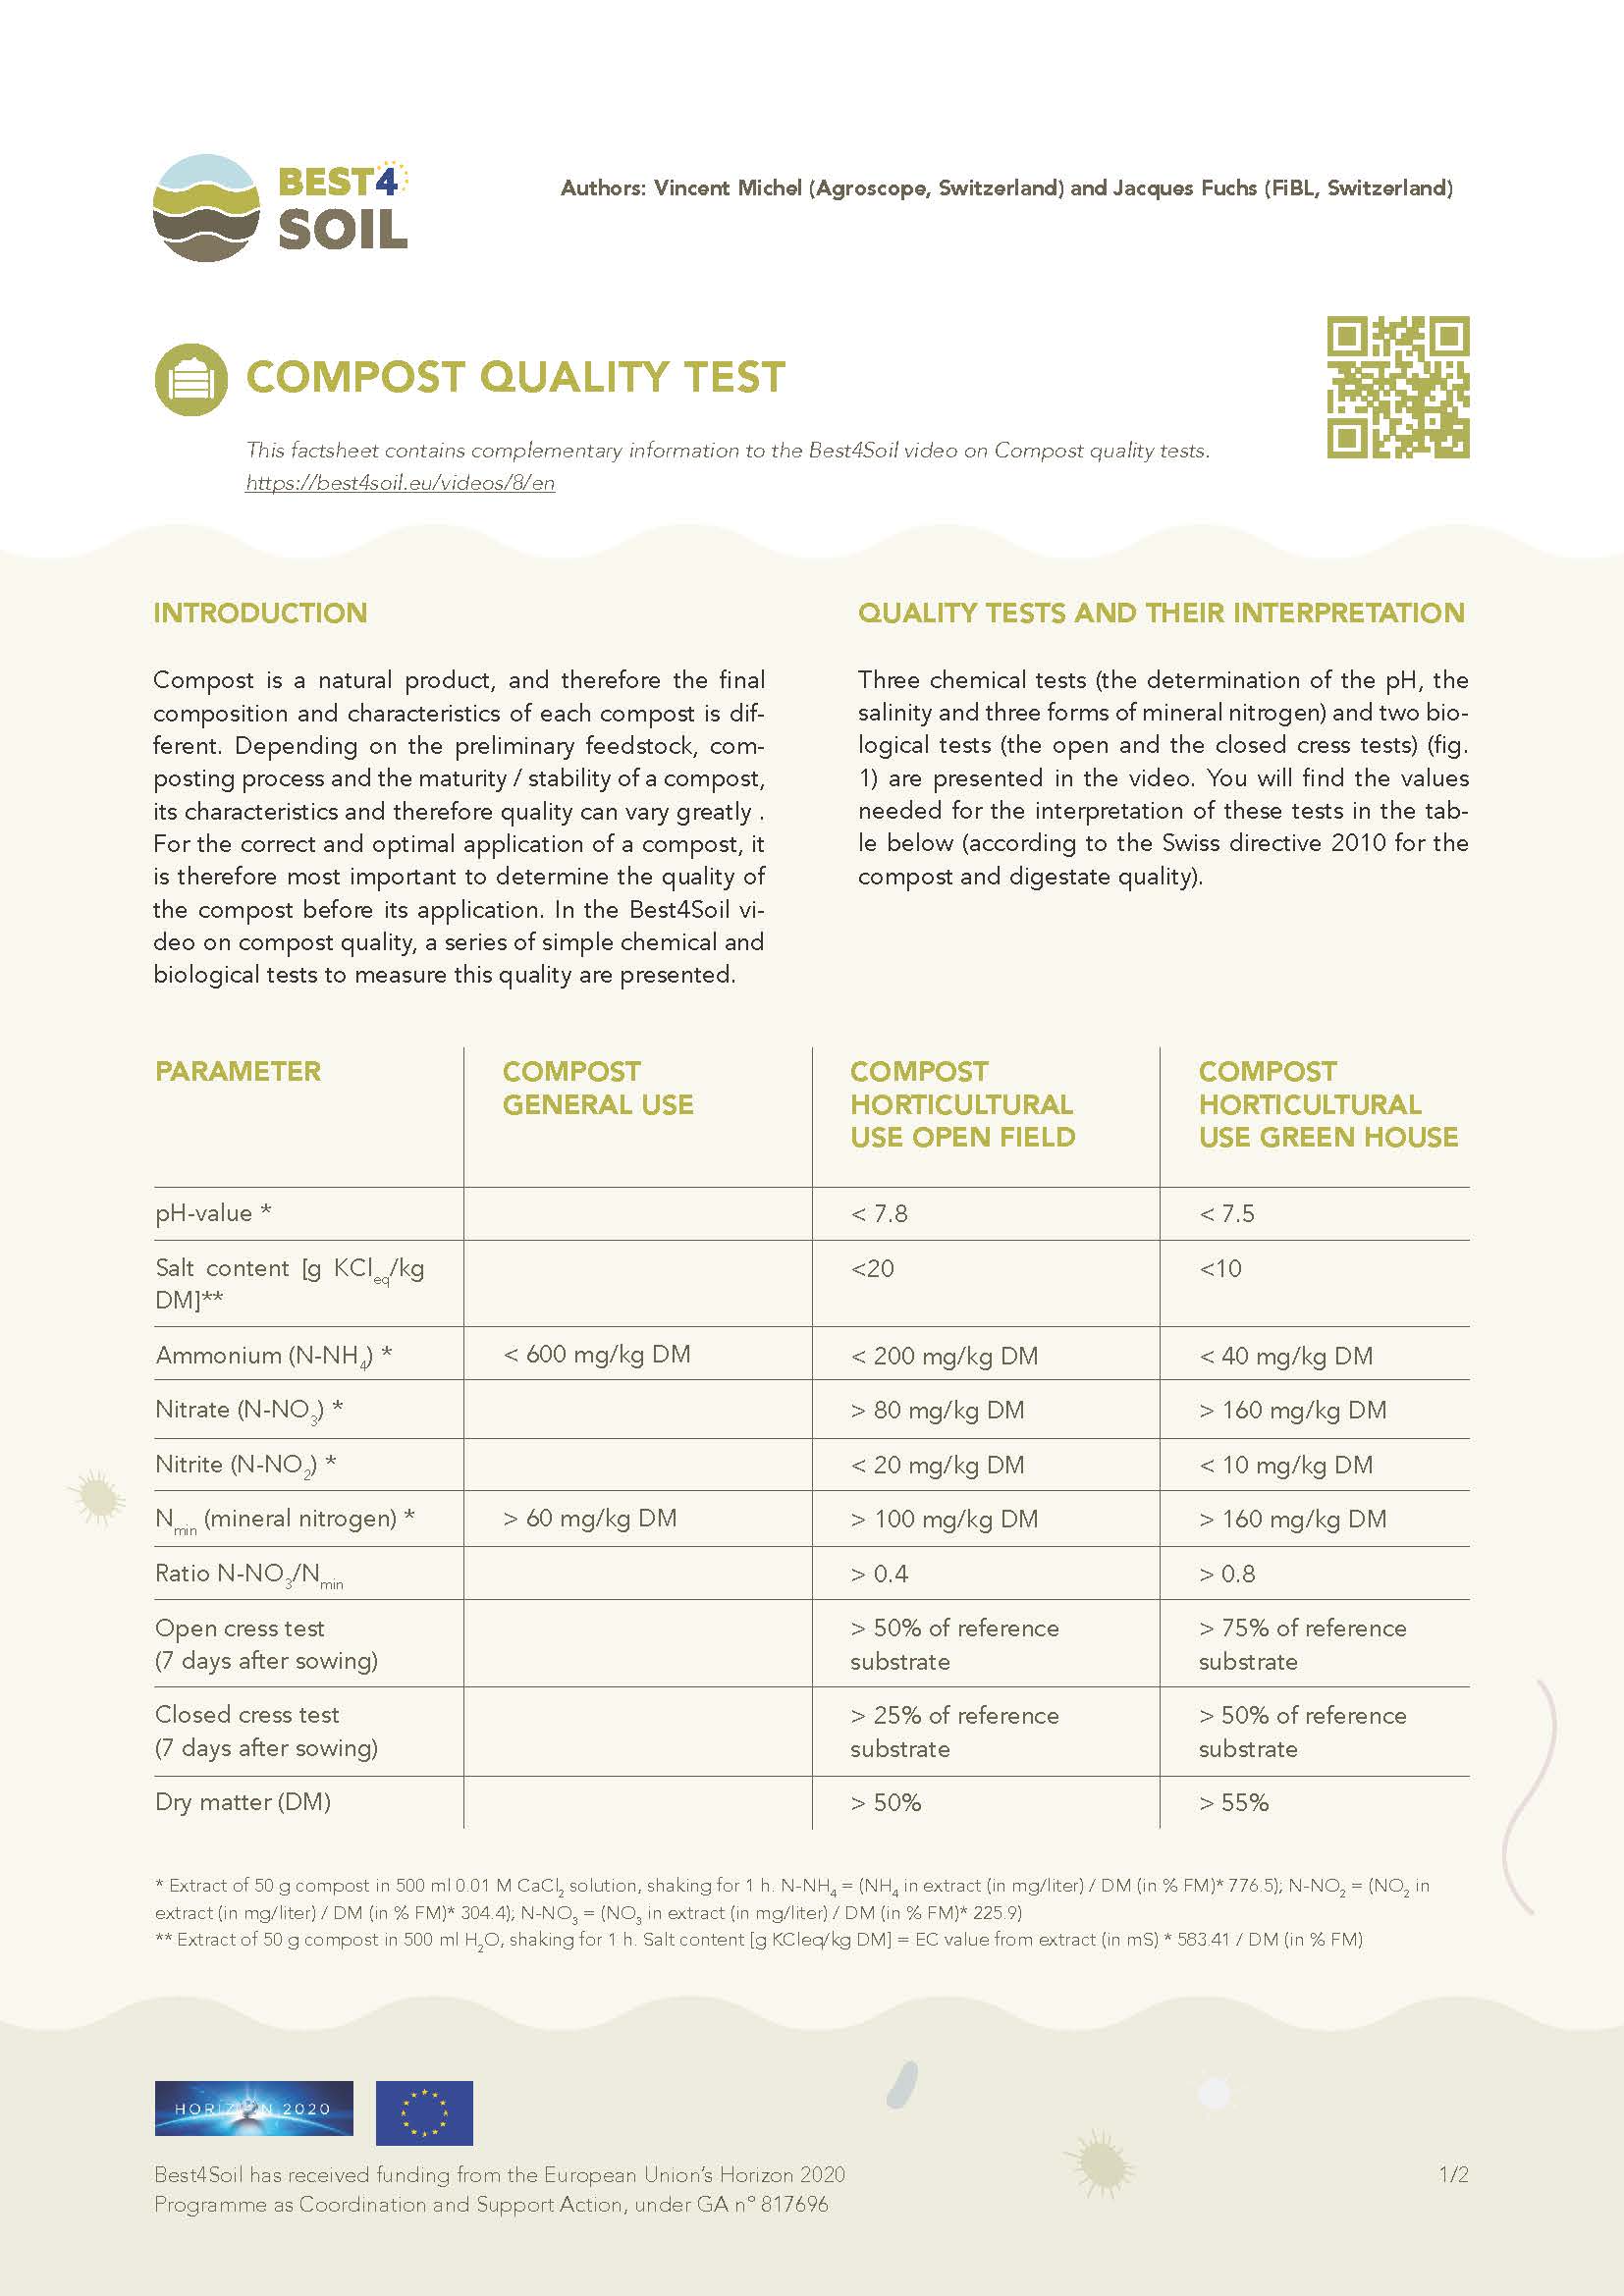 Test jakości kompostu (arkusz informacyjny Best4Soil)